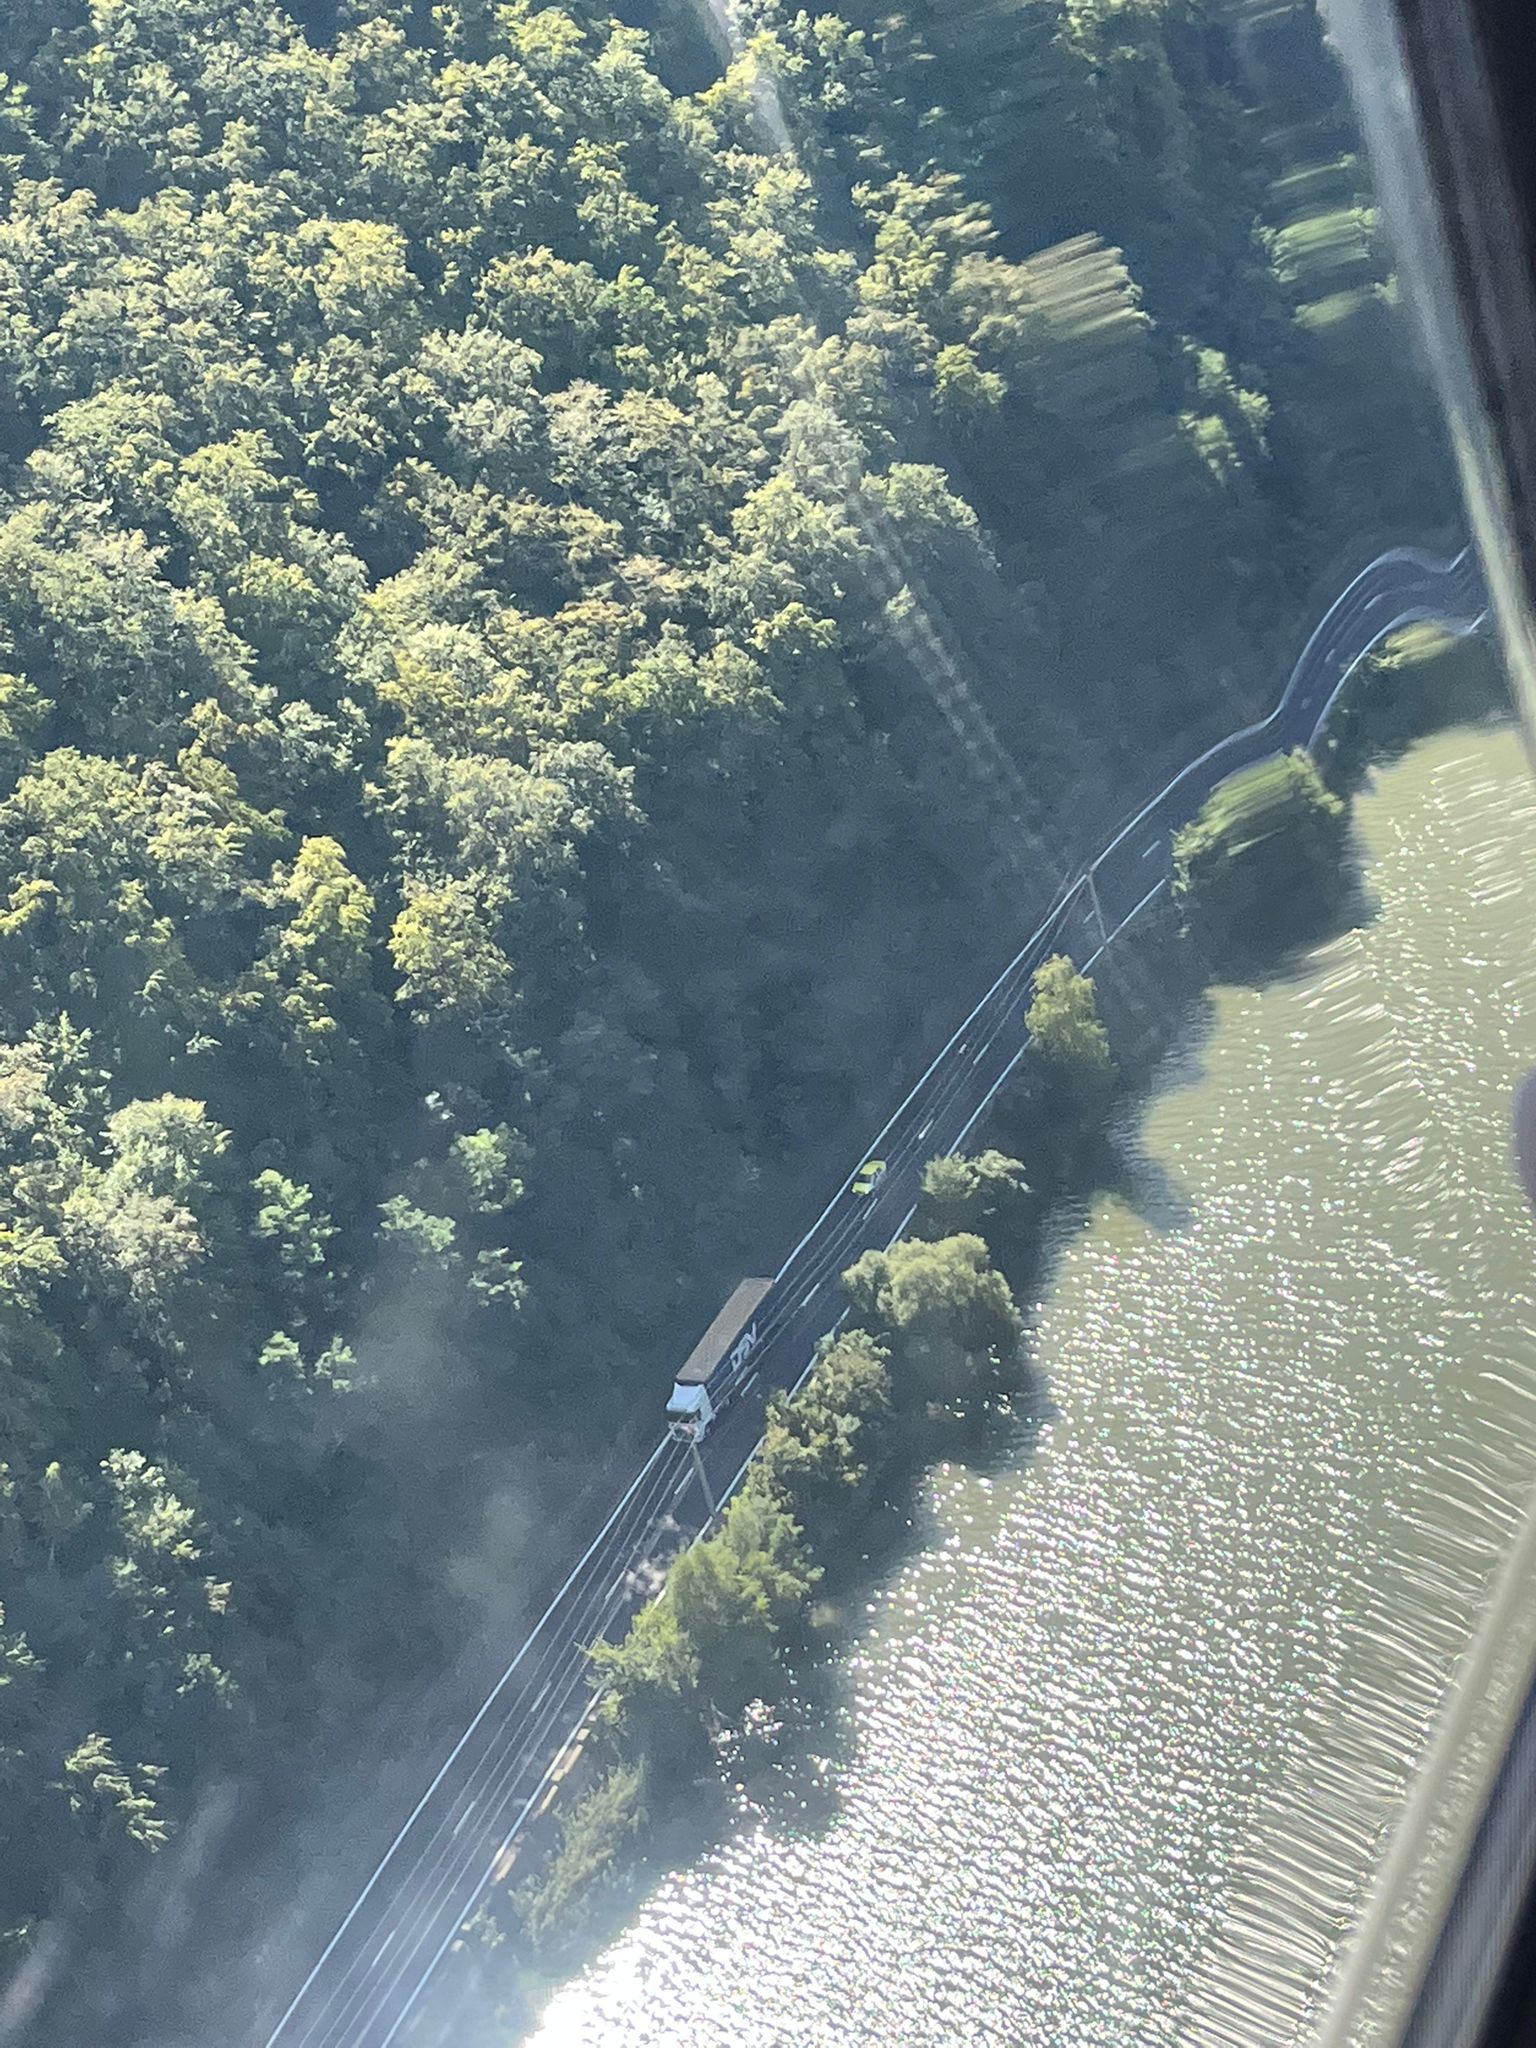 Premieră pe Valea Oltului: Trafic monitorizat din elicopter dotat cu radar. Zeci de șoferi prinși